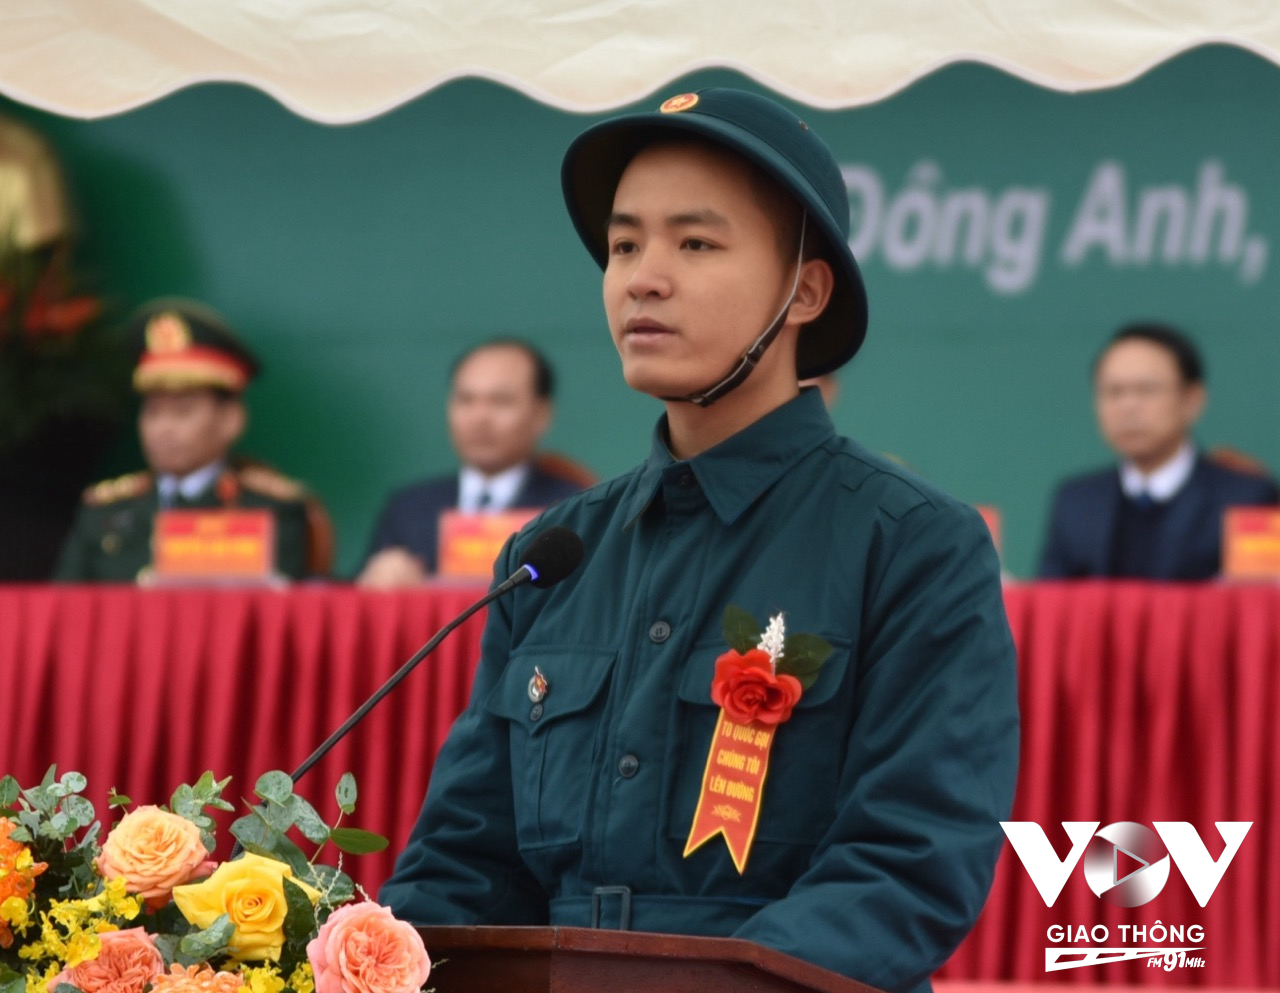 Tân binh Nguyễn Tuấn Anh, công dân xã Cổ Loa (Đông Anh, Hà Nội) thay mặt cho hơn 200 tân binh đọc lời hứa dưới cờ.